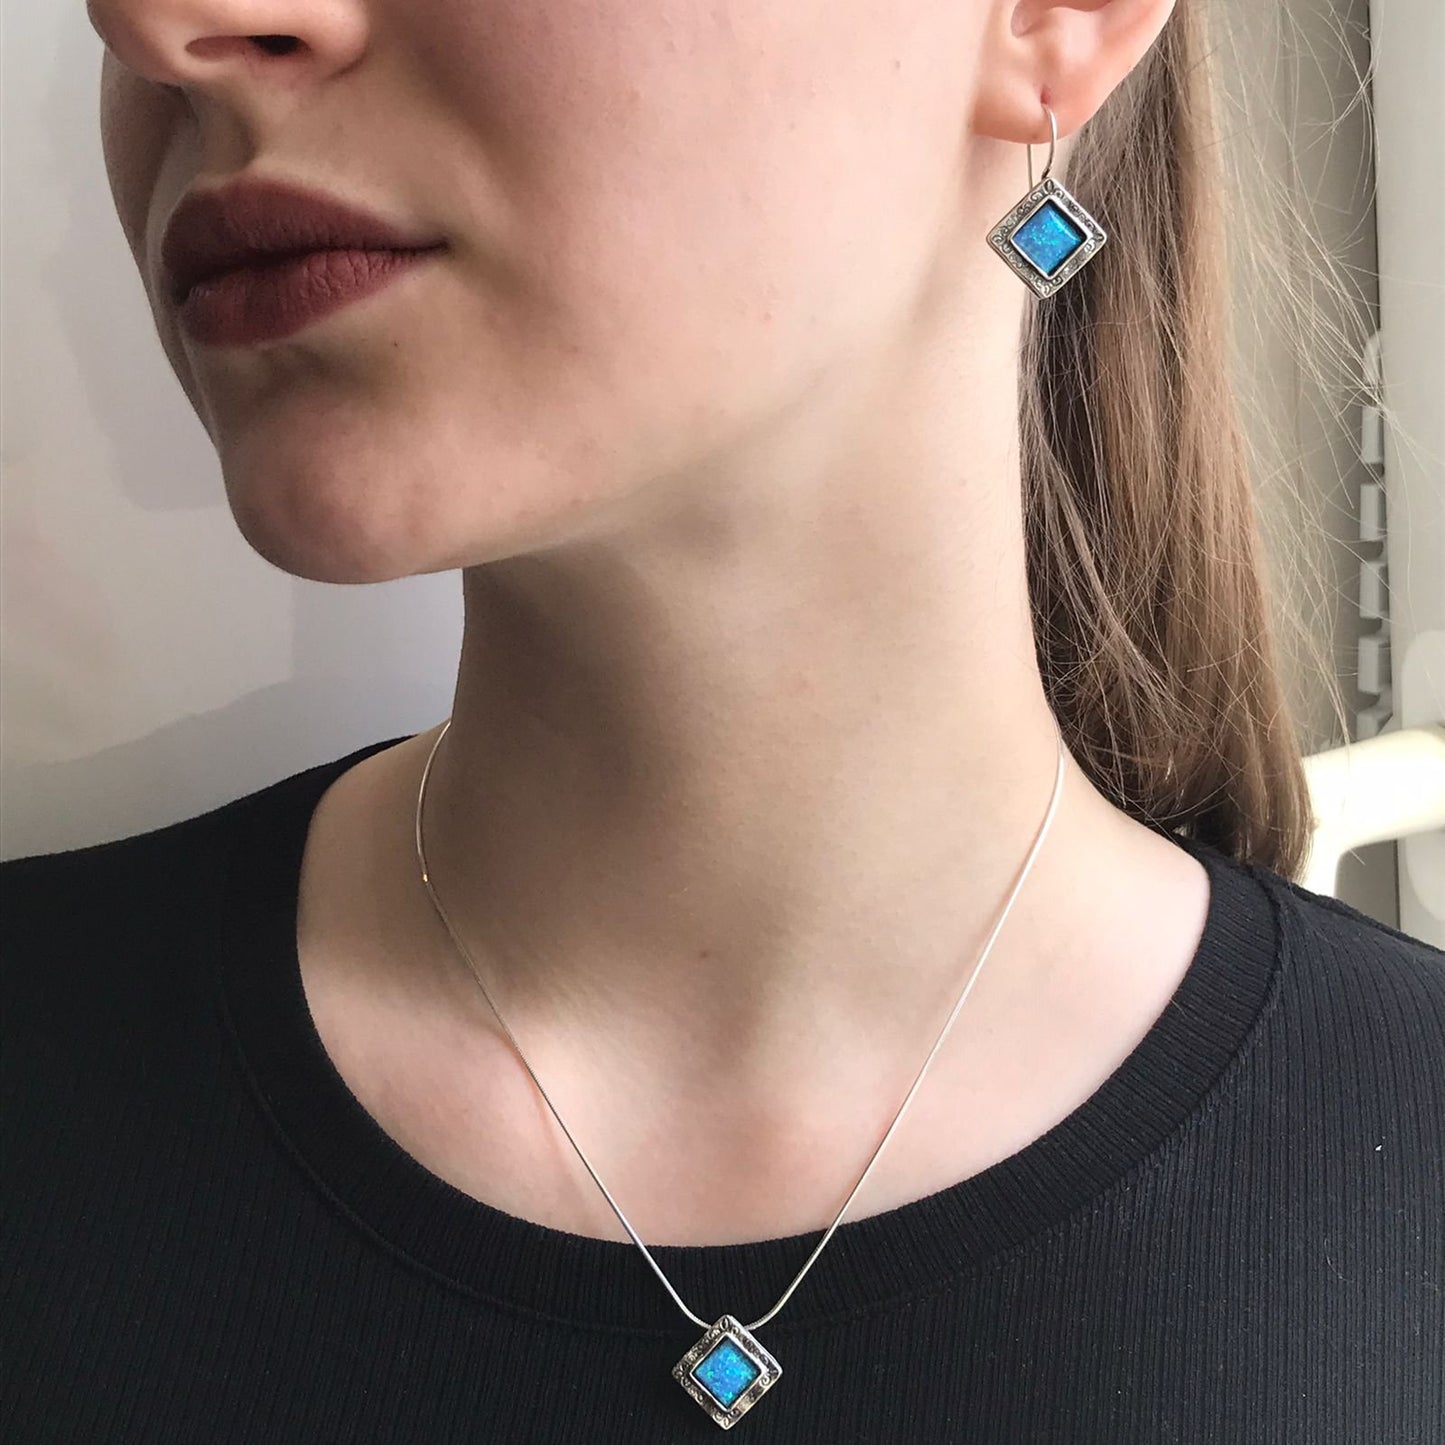 Silver earrings with opal 01E731OP